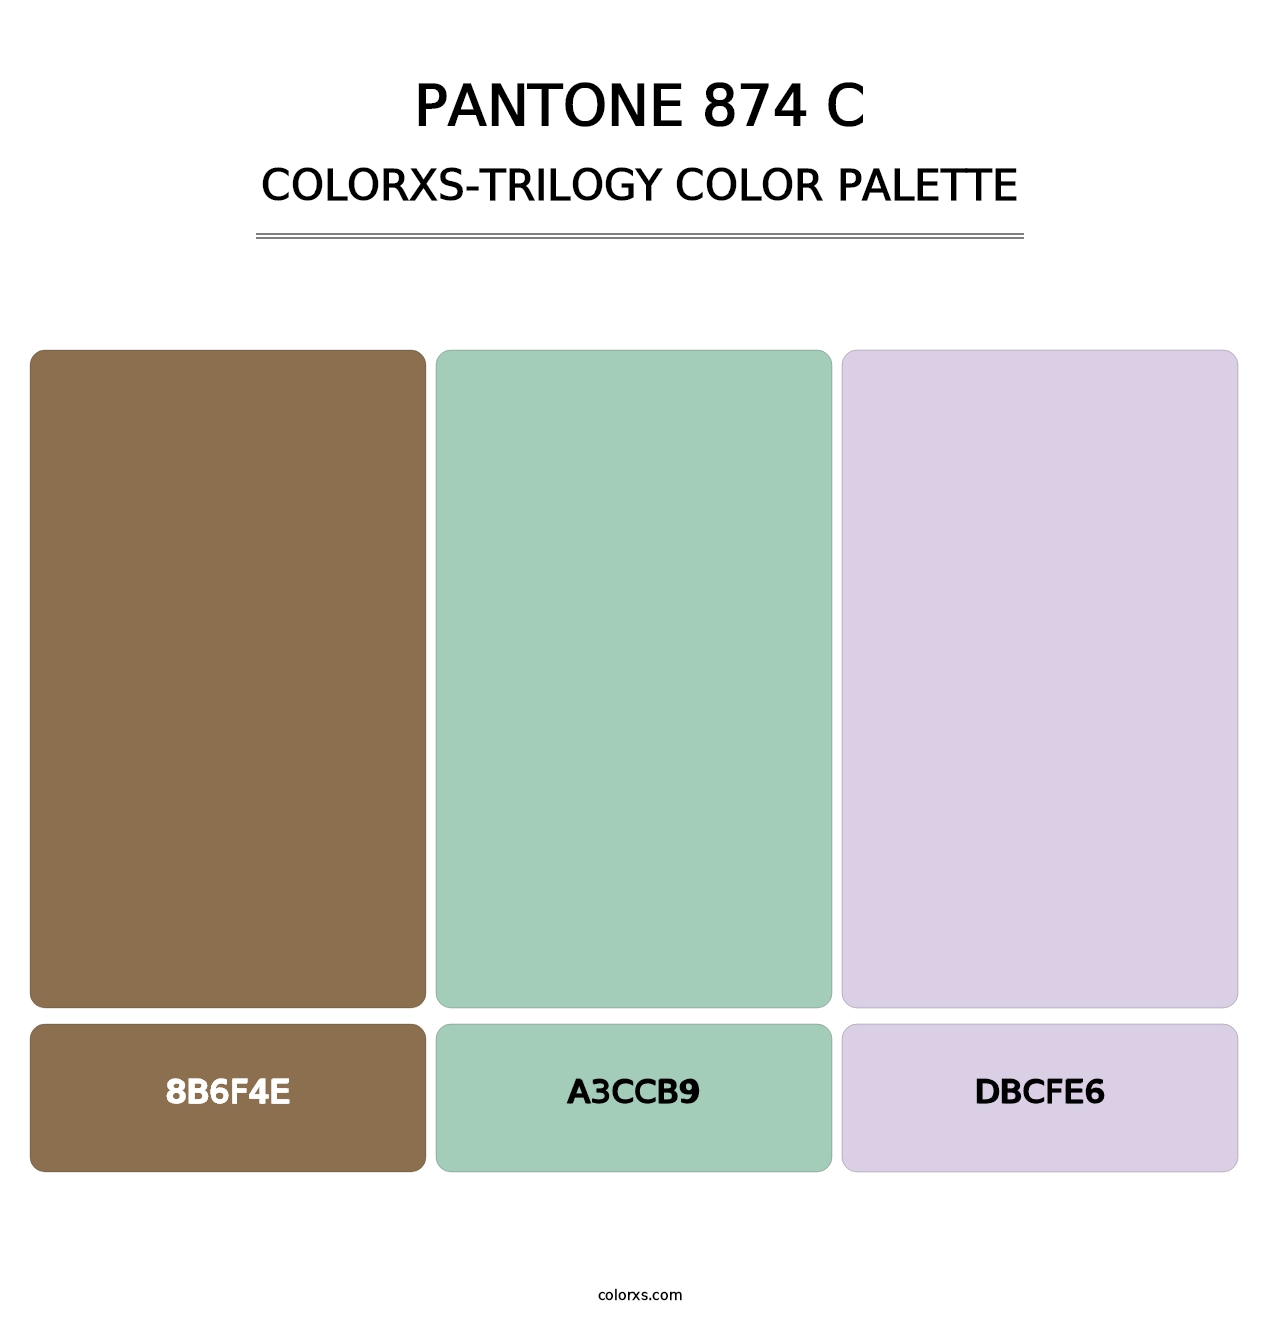 PANTONE 874 C - Colorxs Trilogy Palette